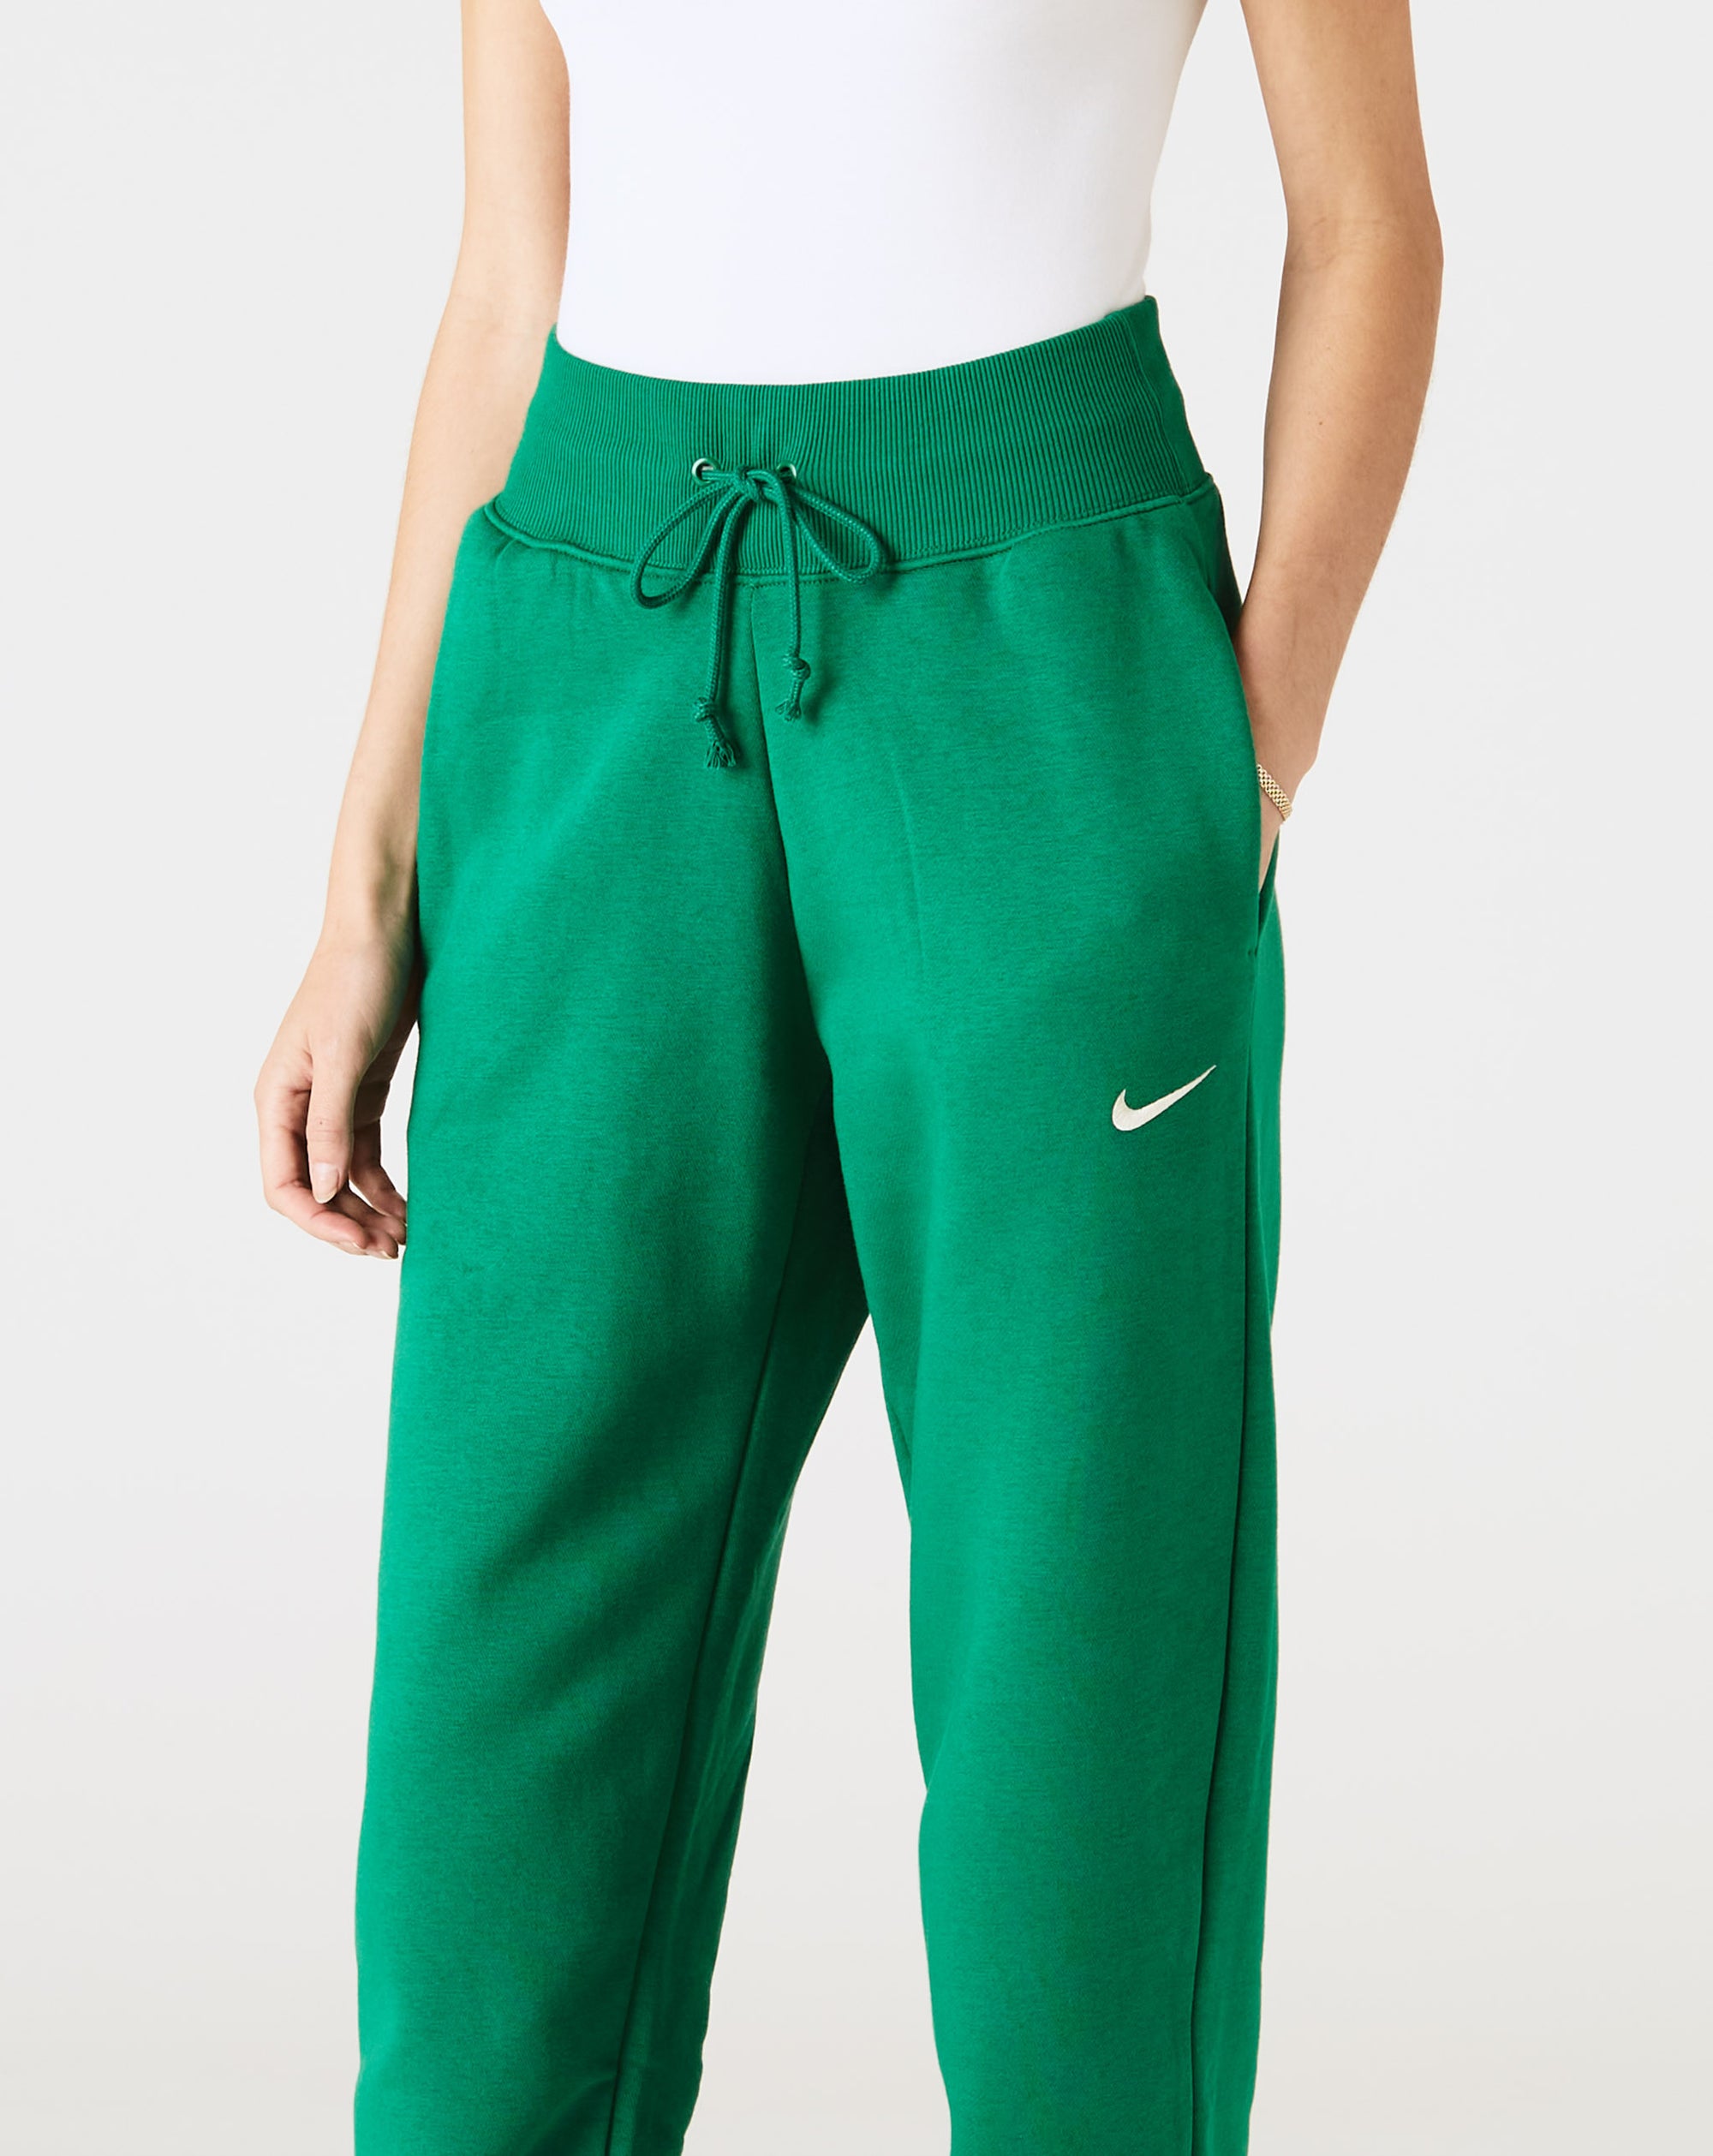 Nike Women's Phoenix Fleece High-Rise Pants - Rule of Next Apparel